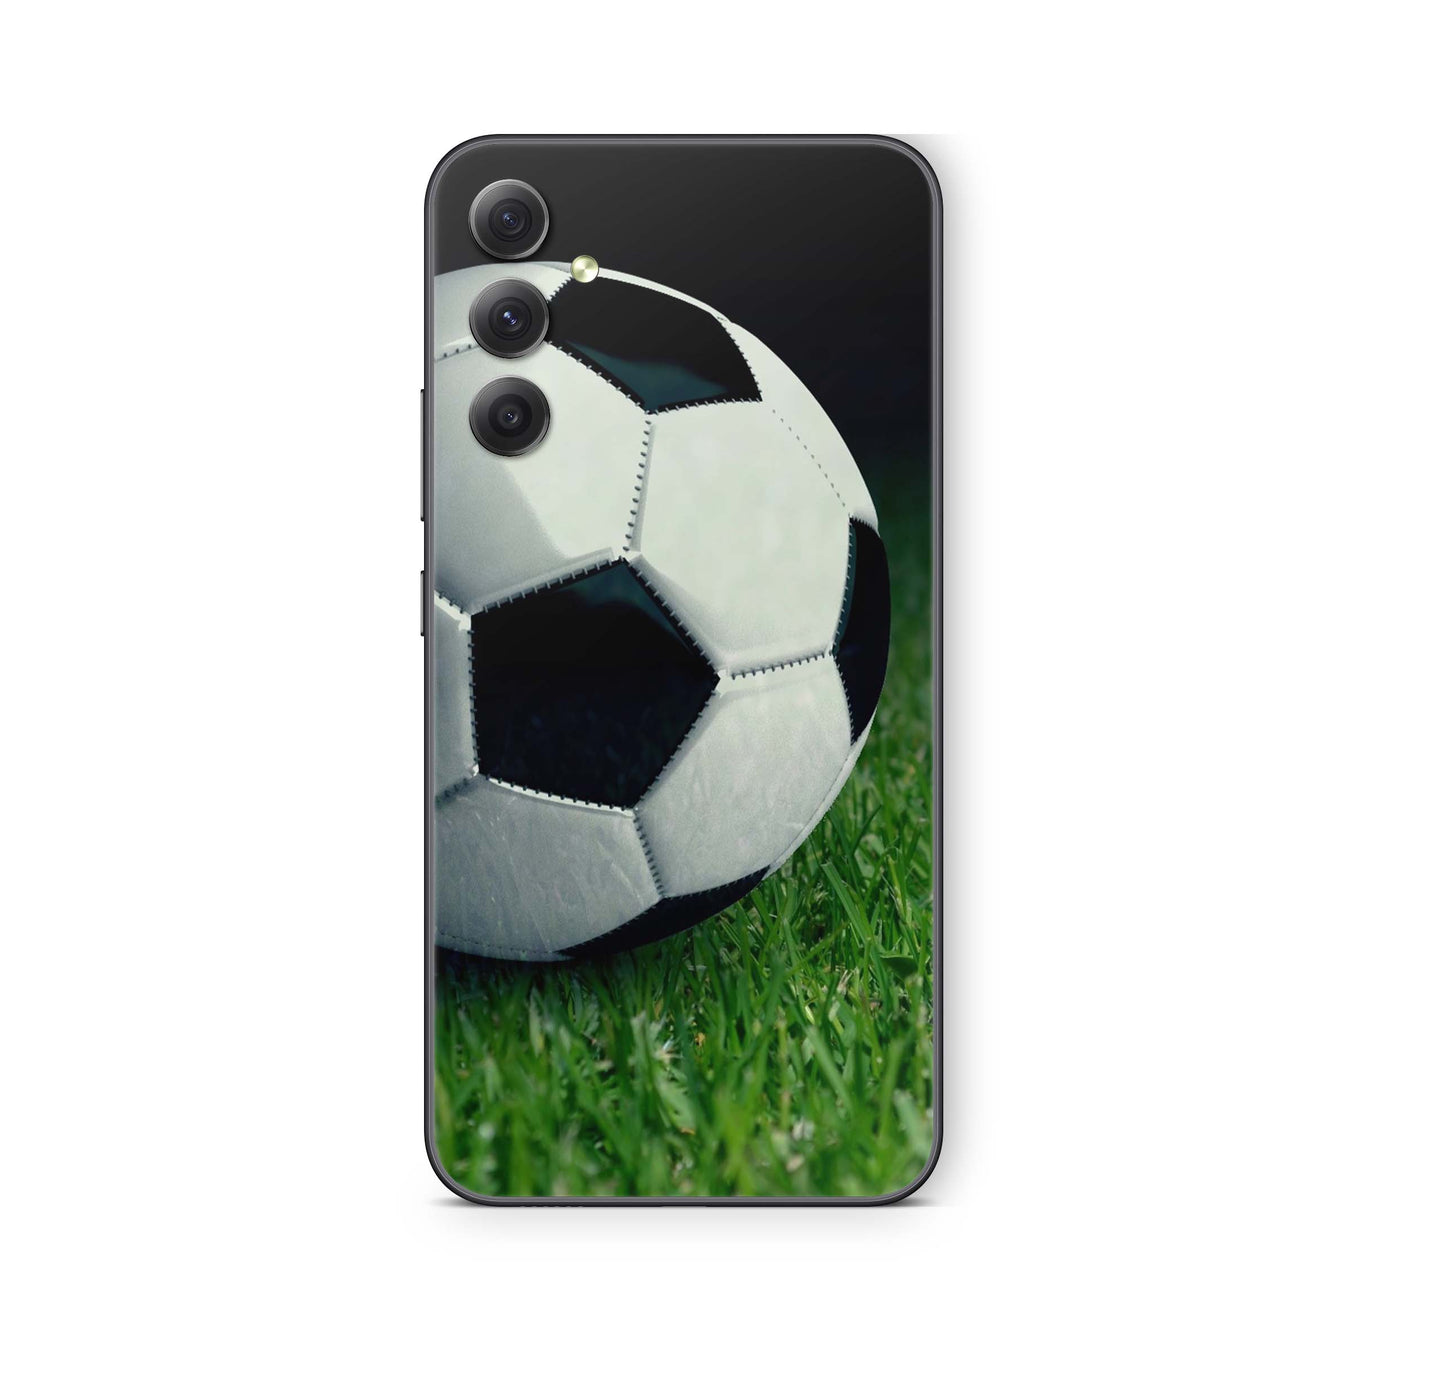 Samsung Galaxy S24 Skin Schutzfolie Aufkleber Skins Design Soccer Elektronik-Sticker & -Aufkleber skins4u   